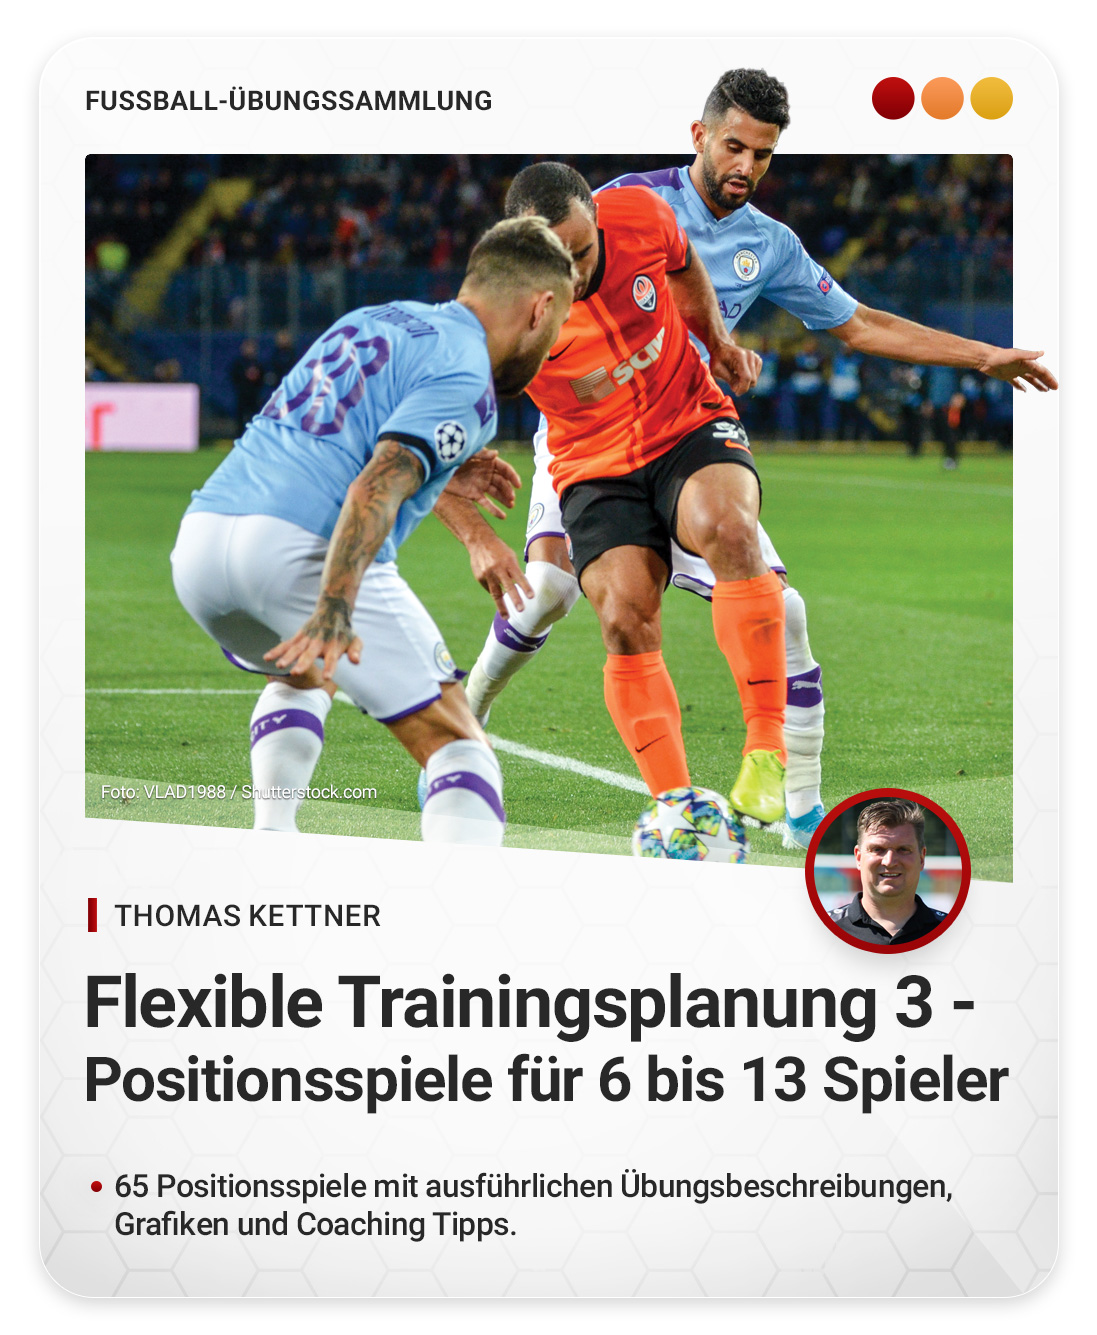 Flexible Trainingsplanung 3 - Positionsspiele für 6 bis 13 Spieler (Übungssammlung)